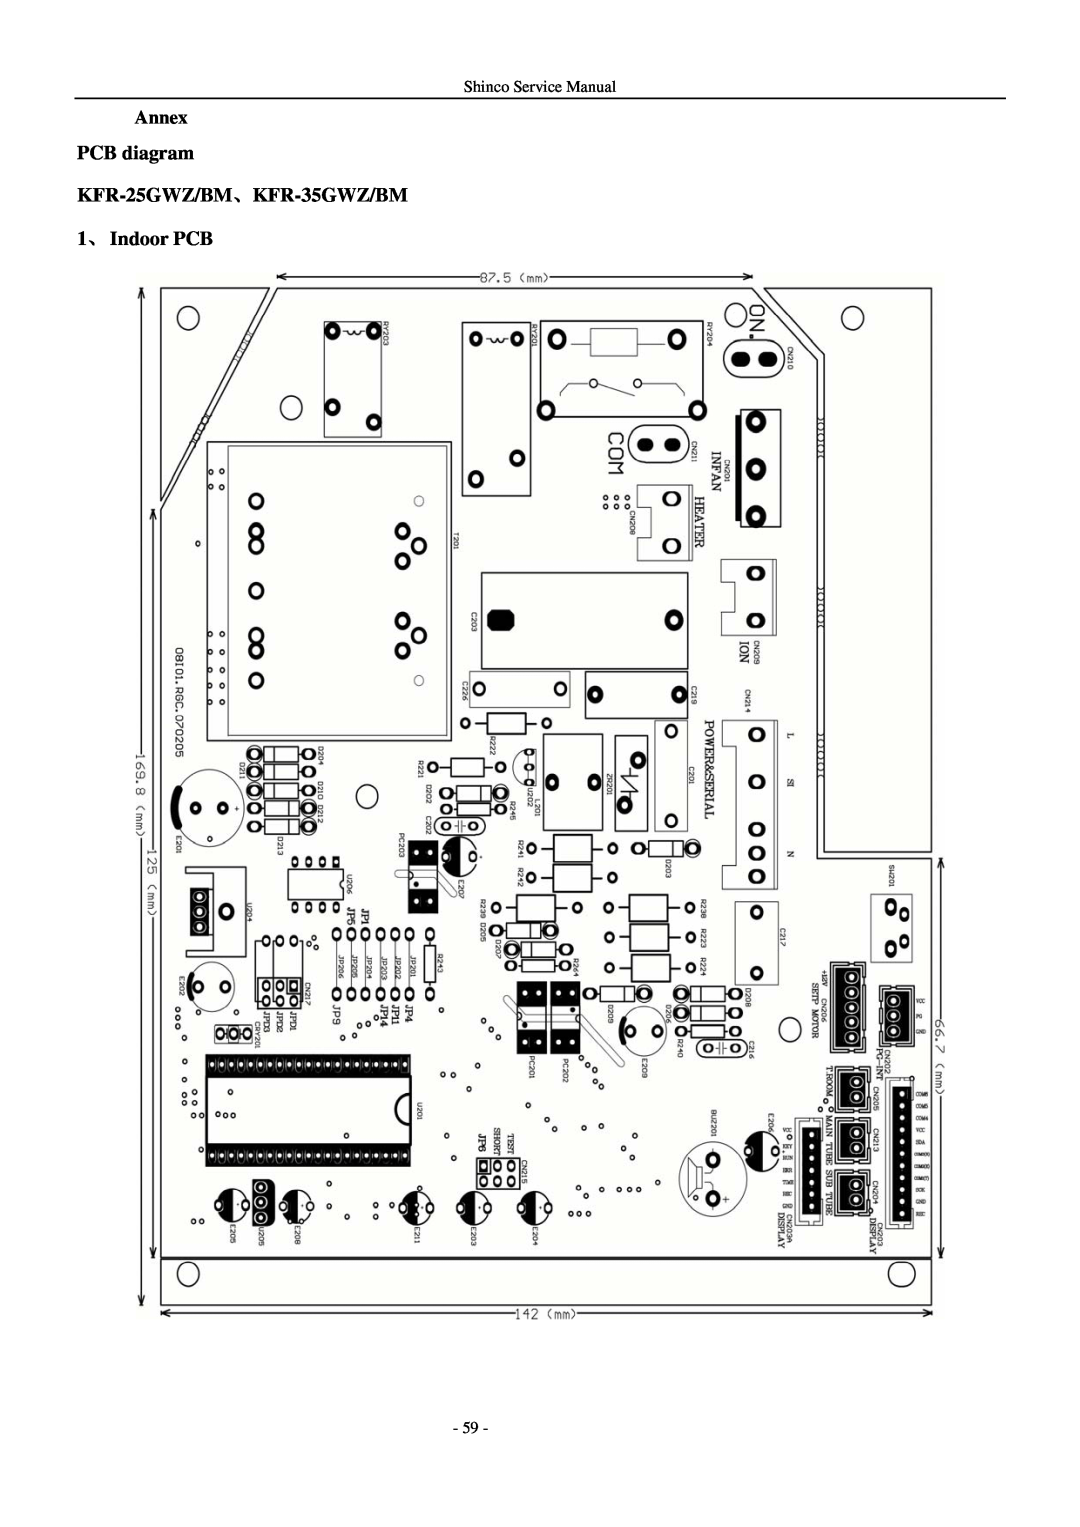 Shinco KFR-25GWZ BM service manual PCB diagram KFR-25GWZ/BM、KFR-35GWZ/BM, 1、 Indoor PCB, Annex 